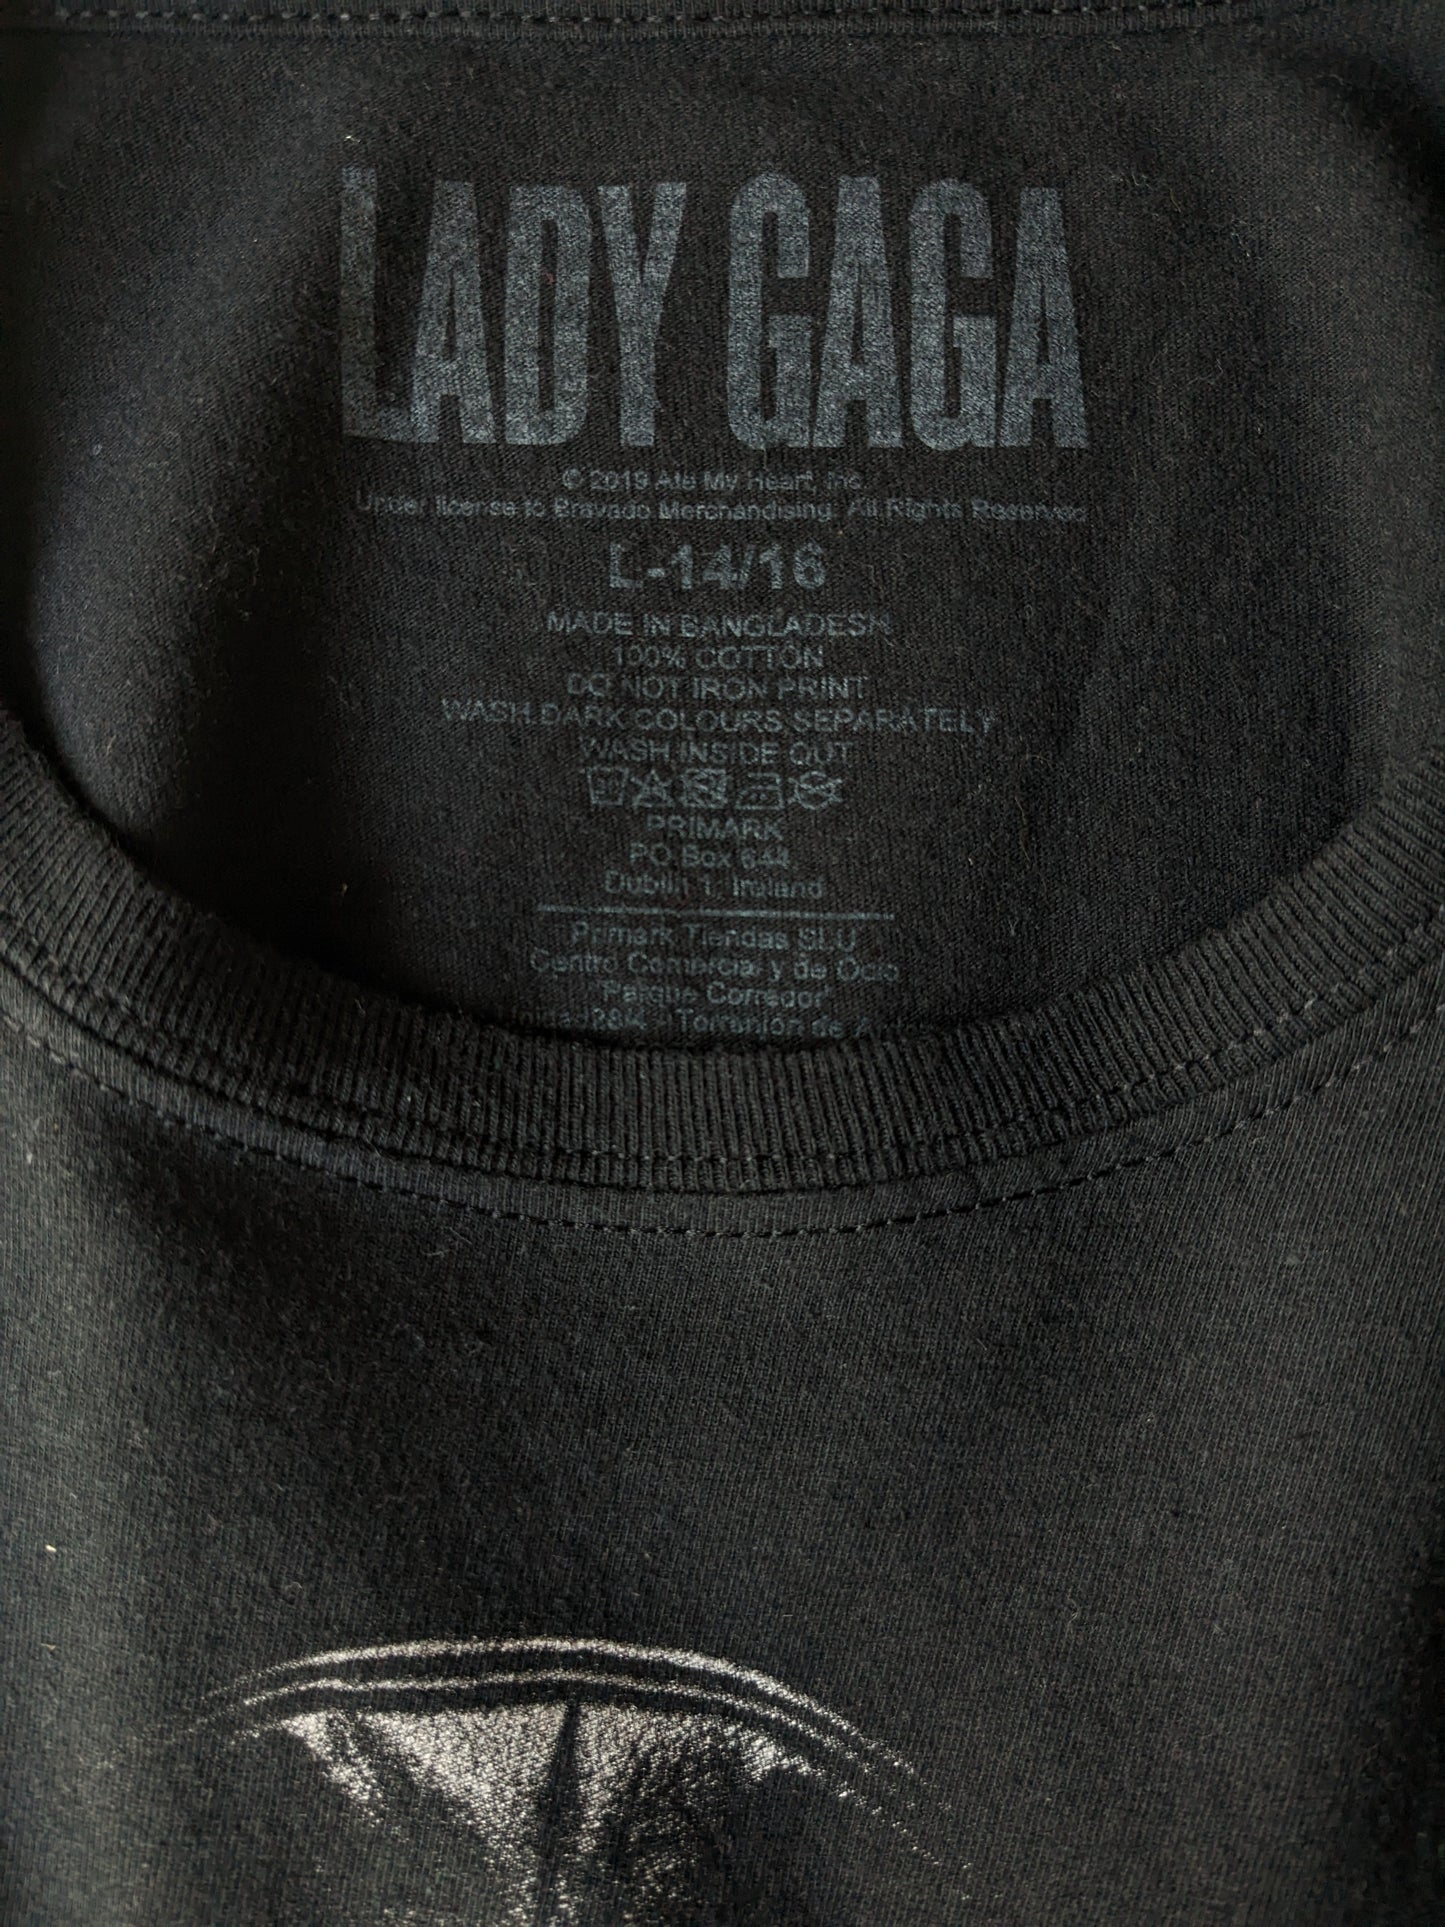 Chemise Lady Gaga. Noir avec imprimé. Taille L Kids / S adultes.